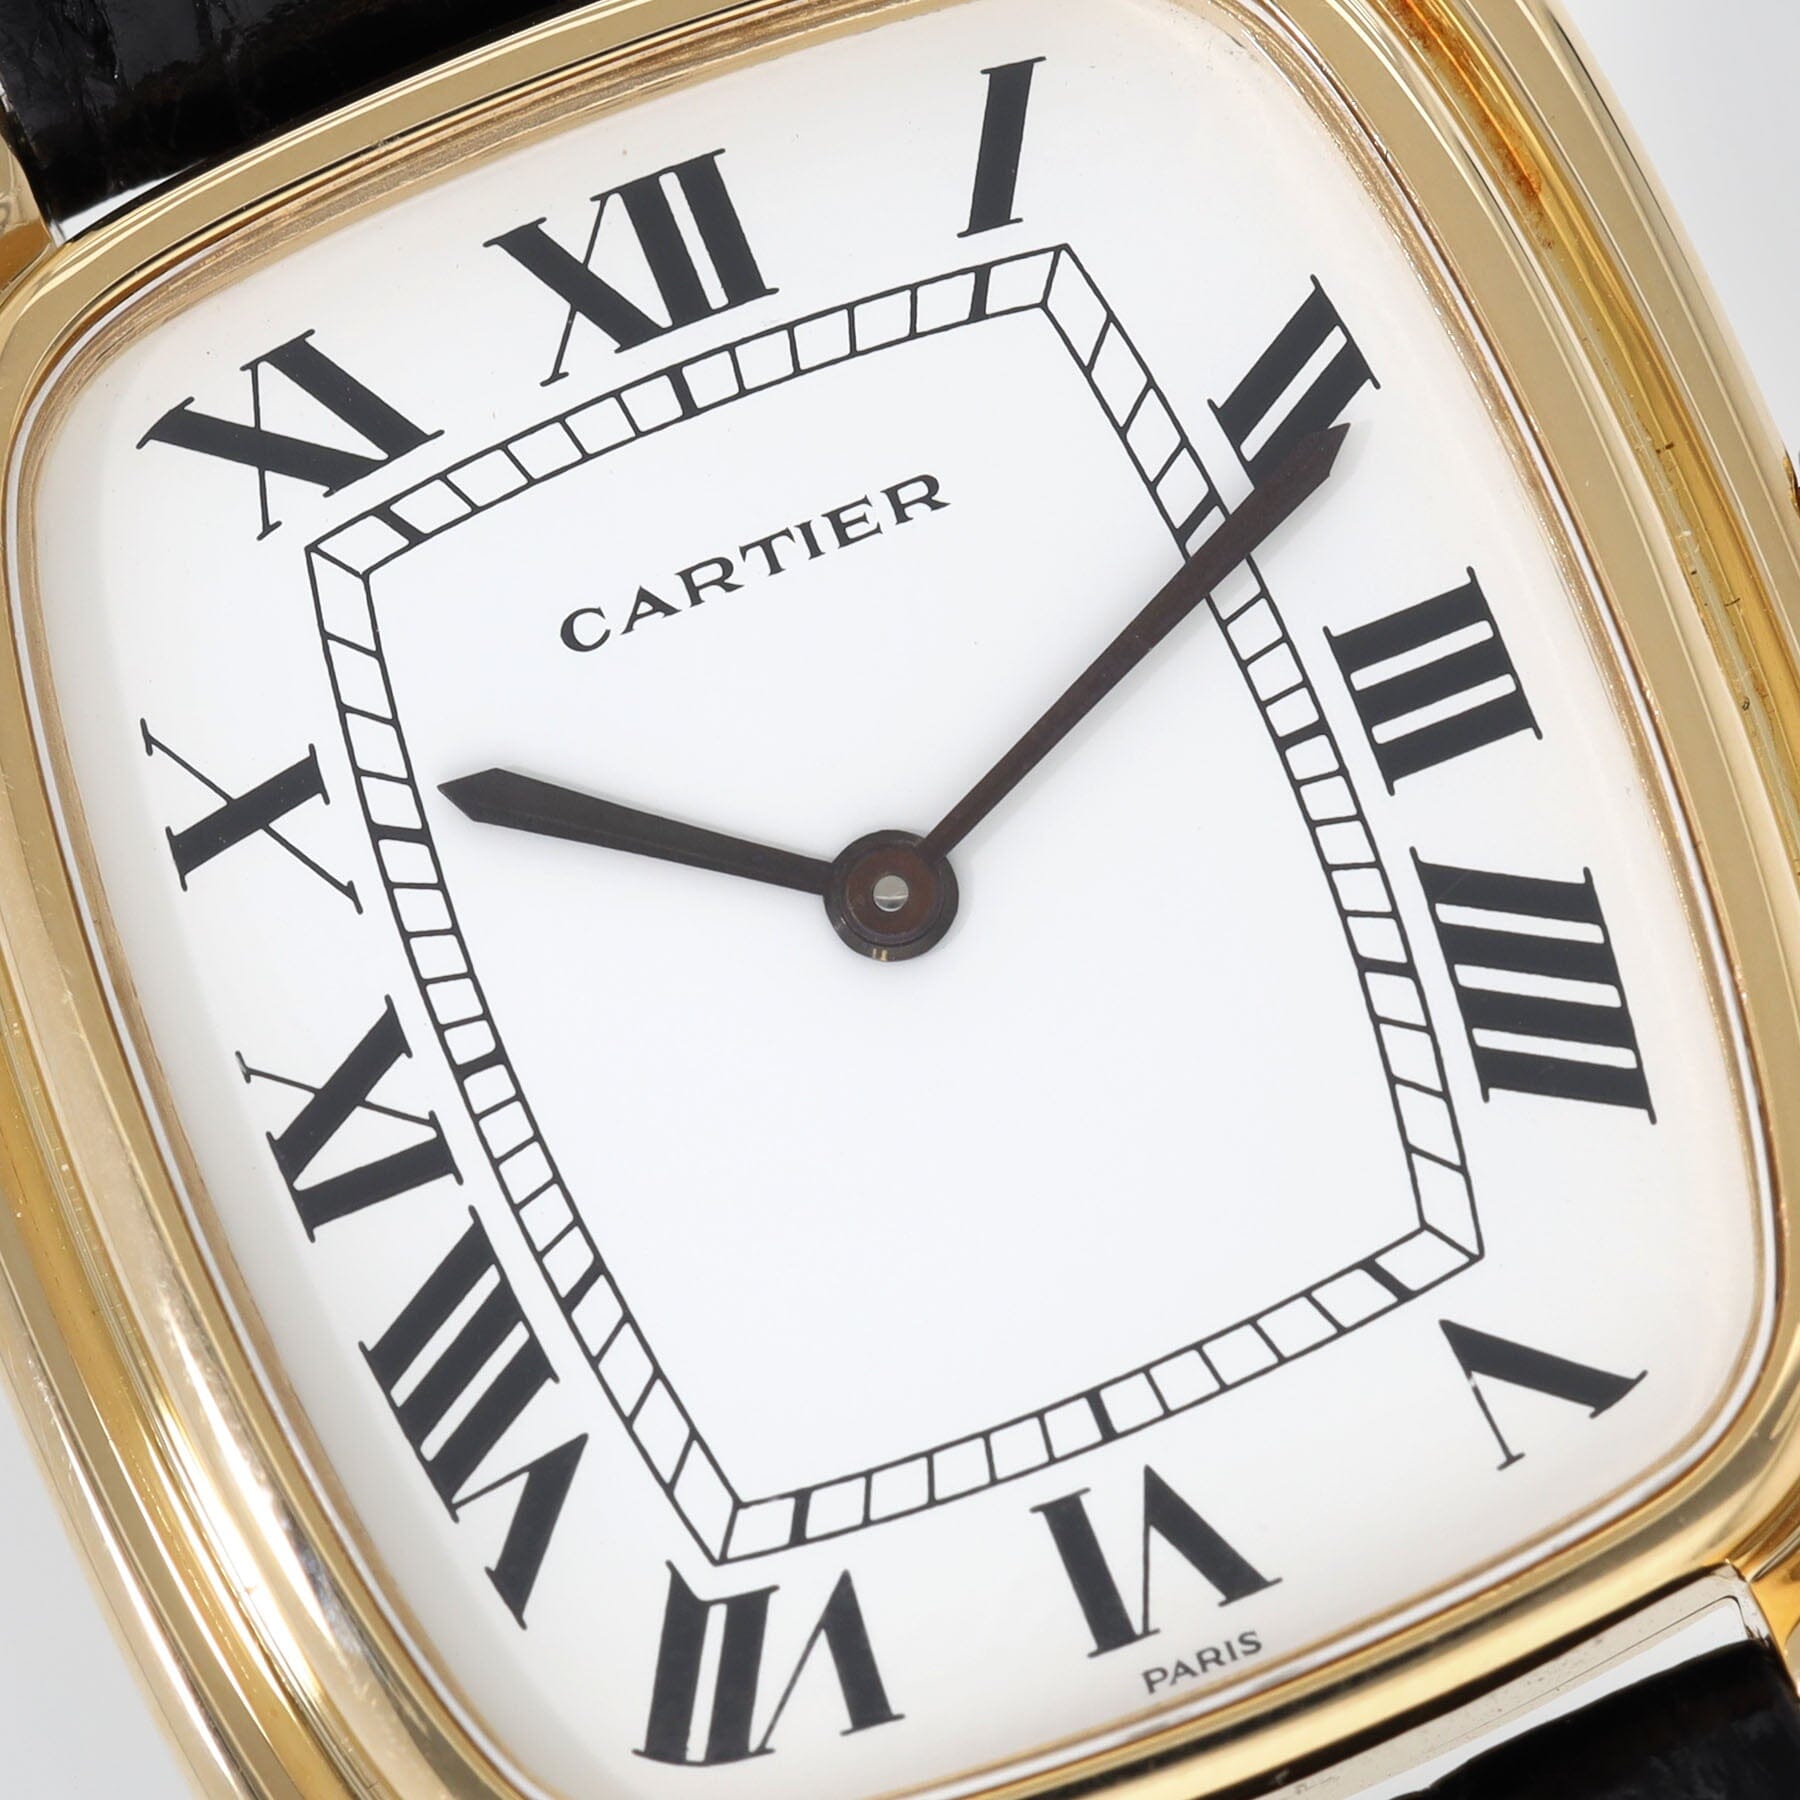 Cartier Paris Gondole Jumbo Verticale 18kt Gold ref 9705